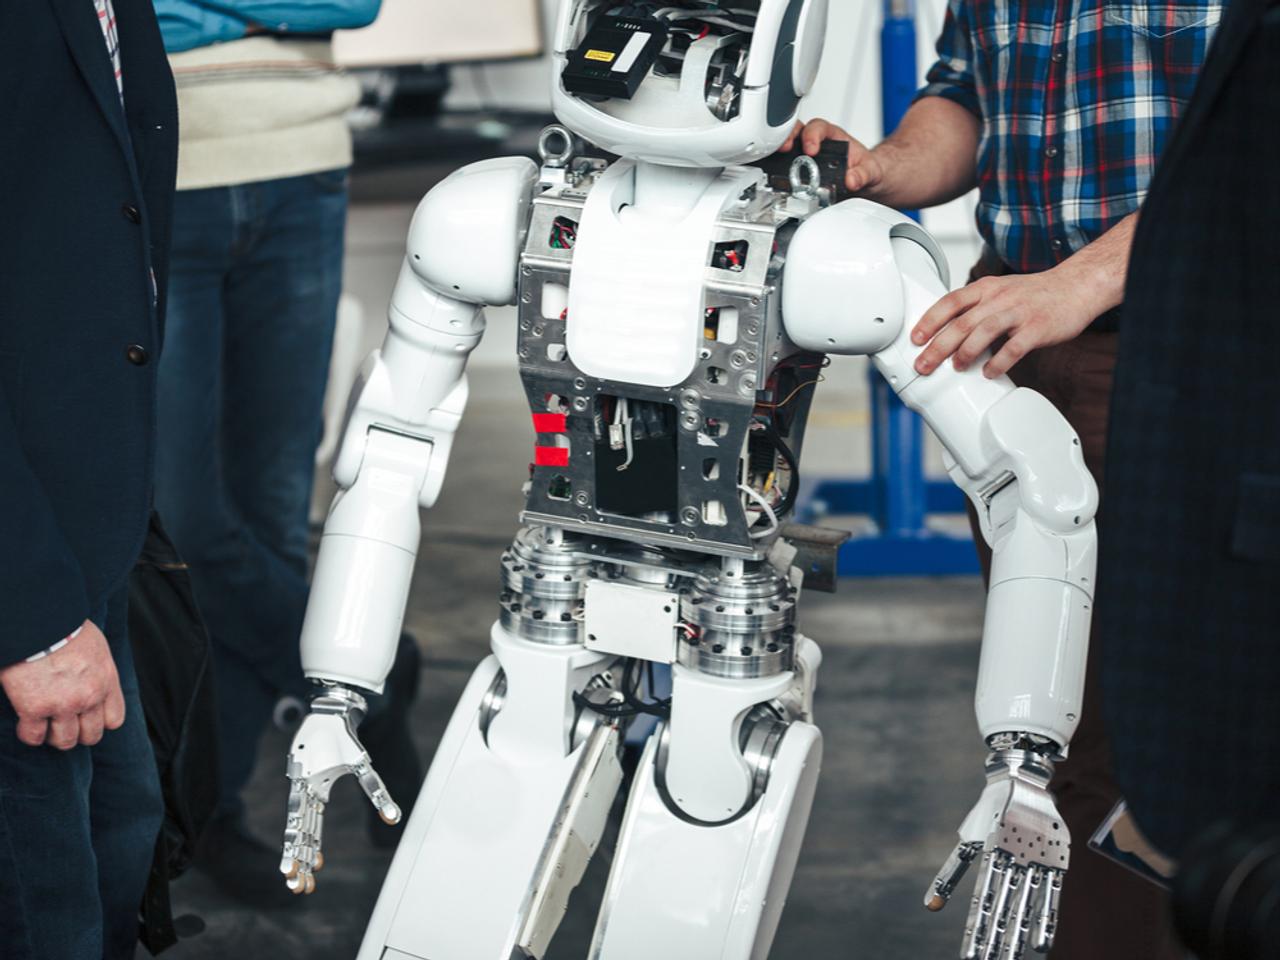 ANAスポンサーのXPRIZE：2021年までに遠隔操作のロボットを完成させれば約8億円の賞金